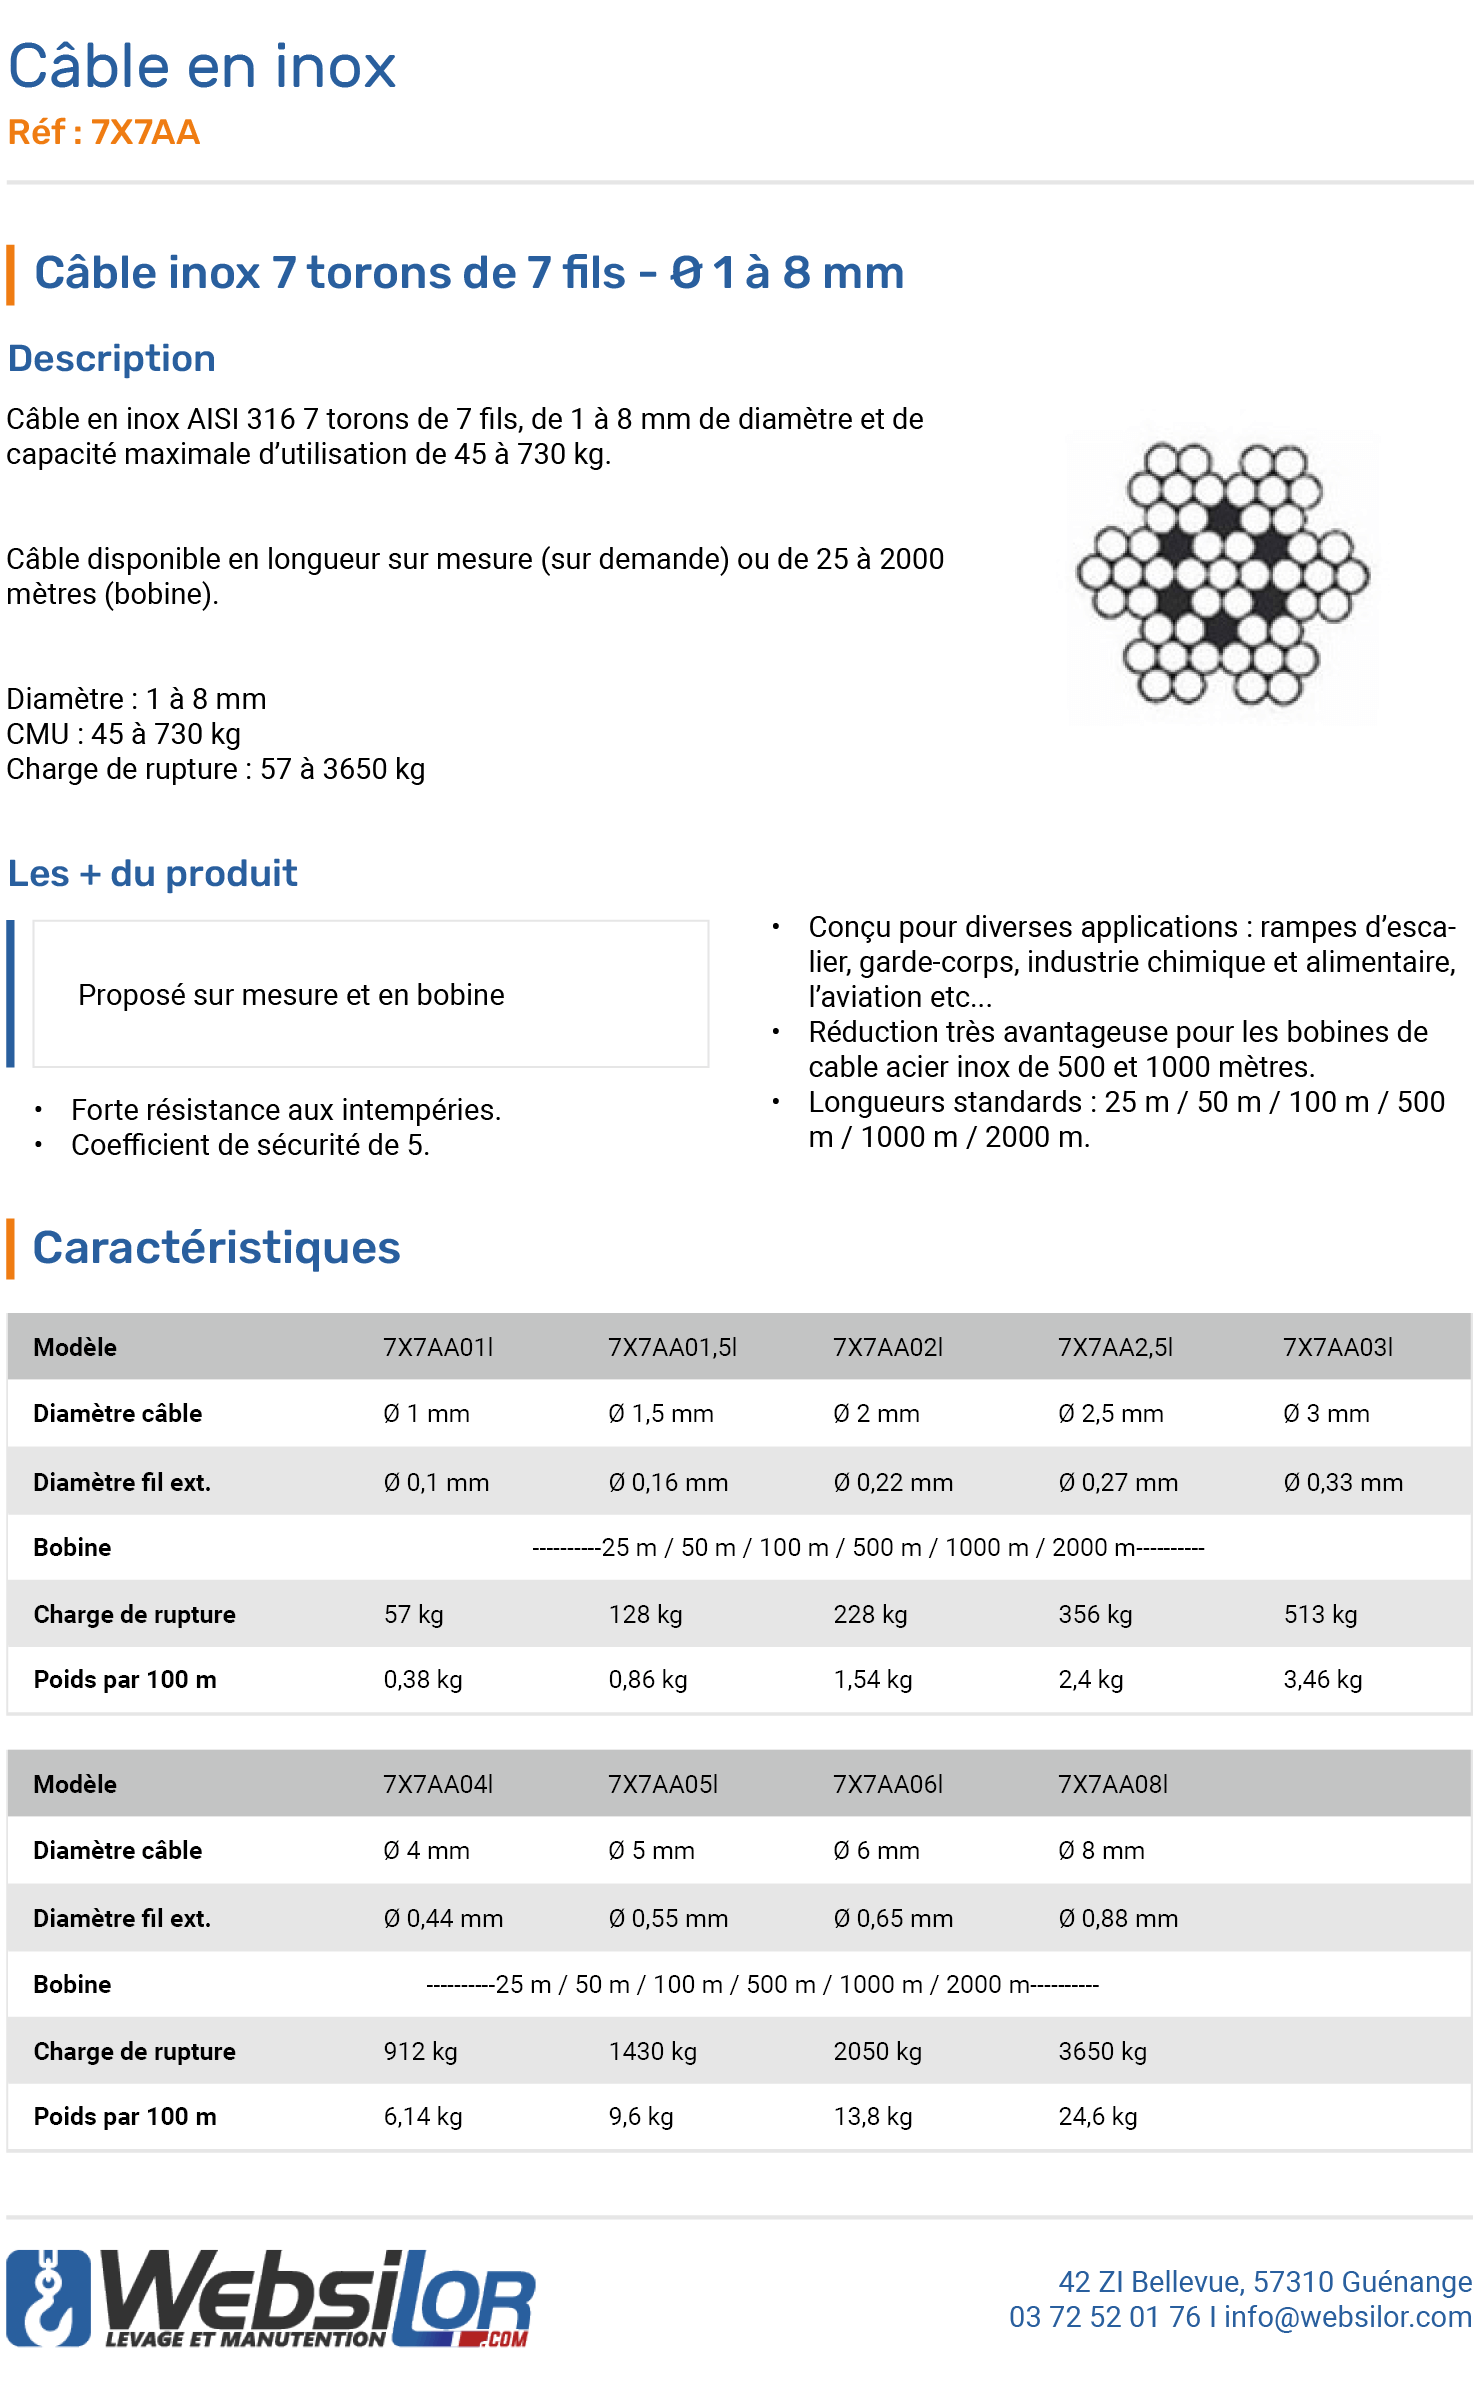 Informations technique de Câble inox 7 torons de 7 fils